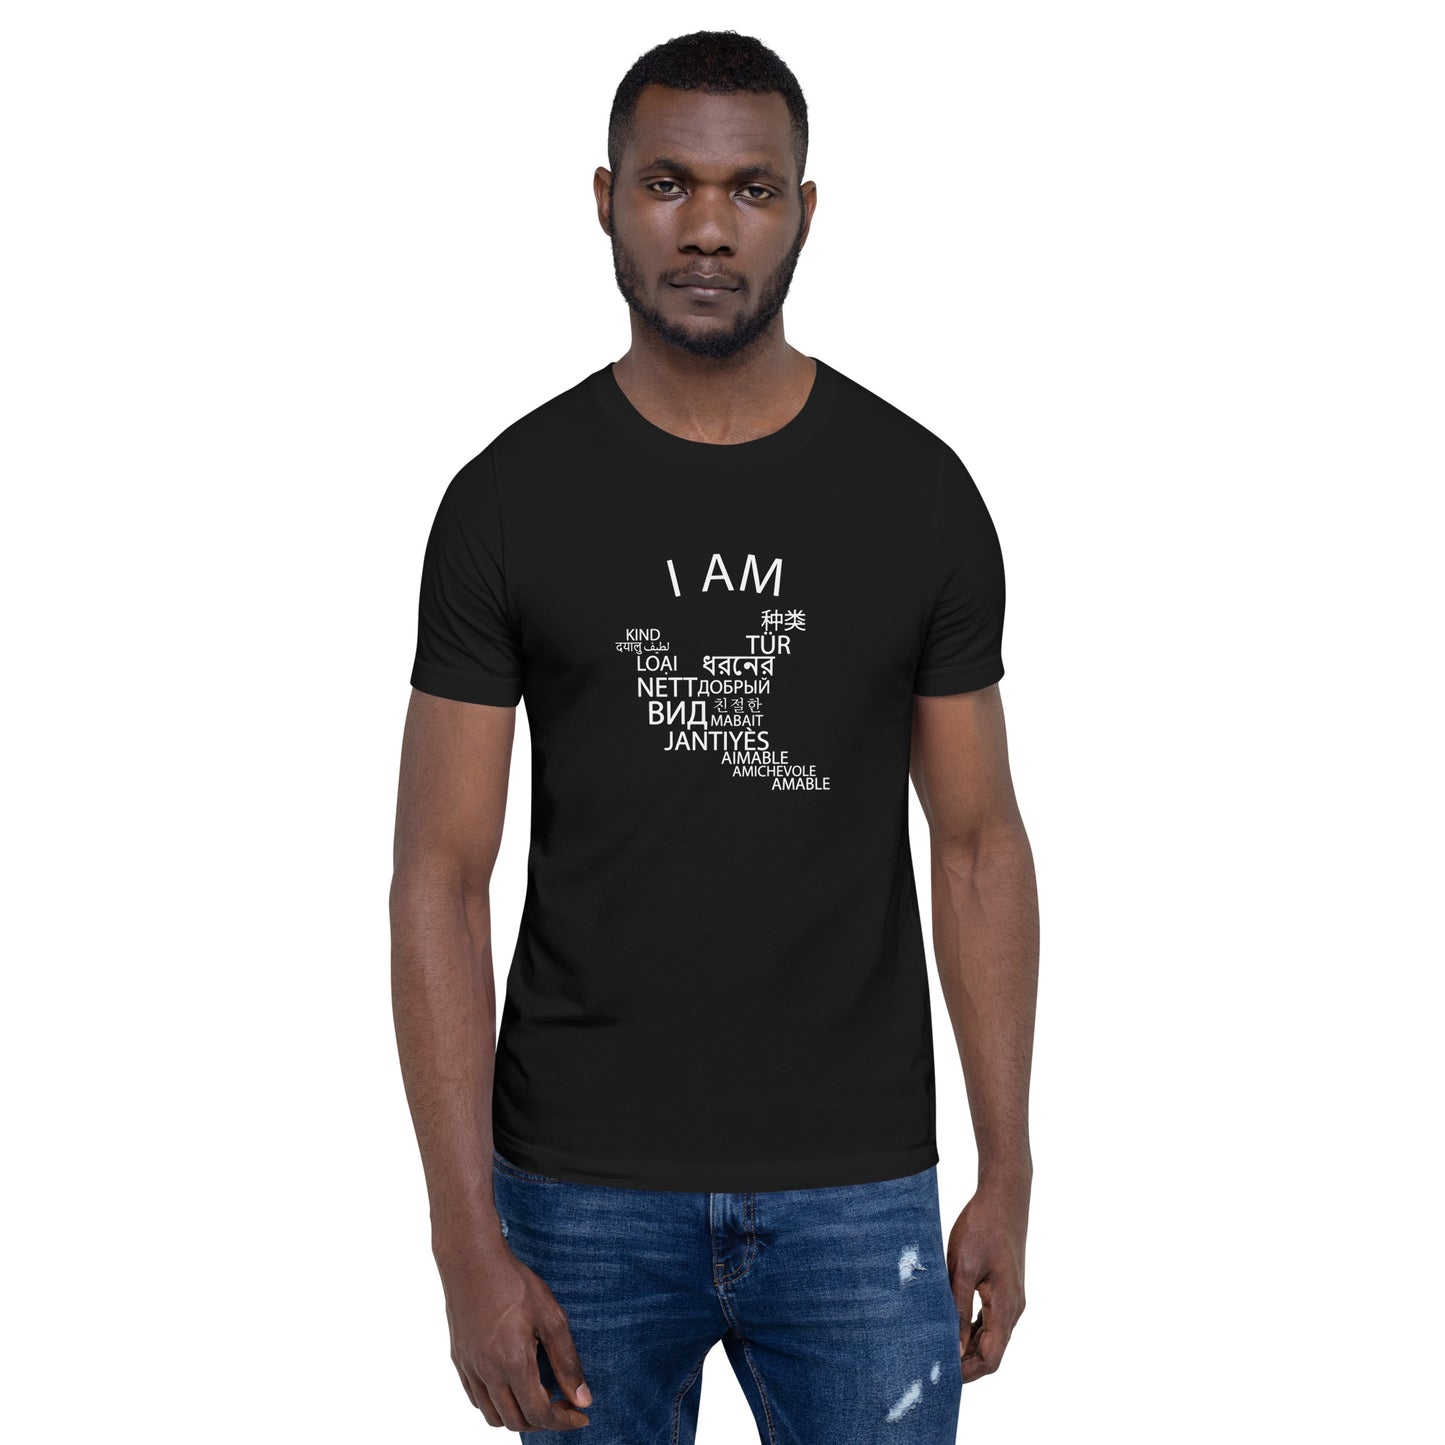 I Am Kind t-shirt